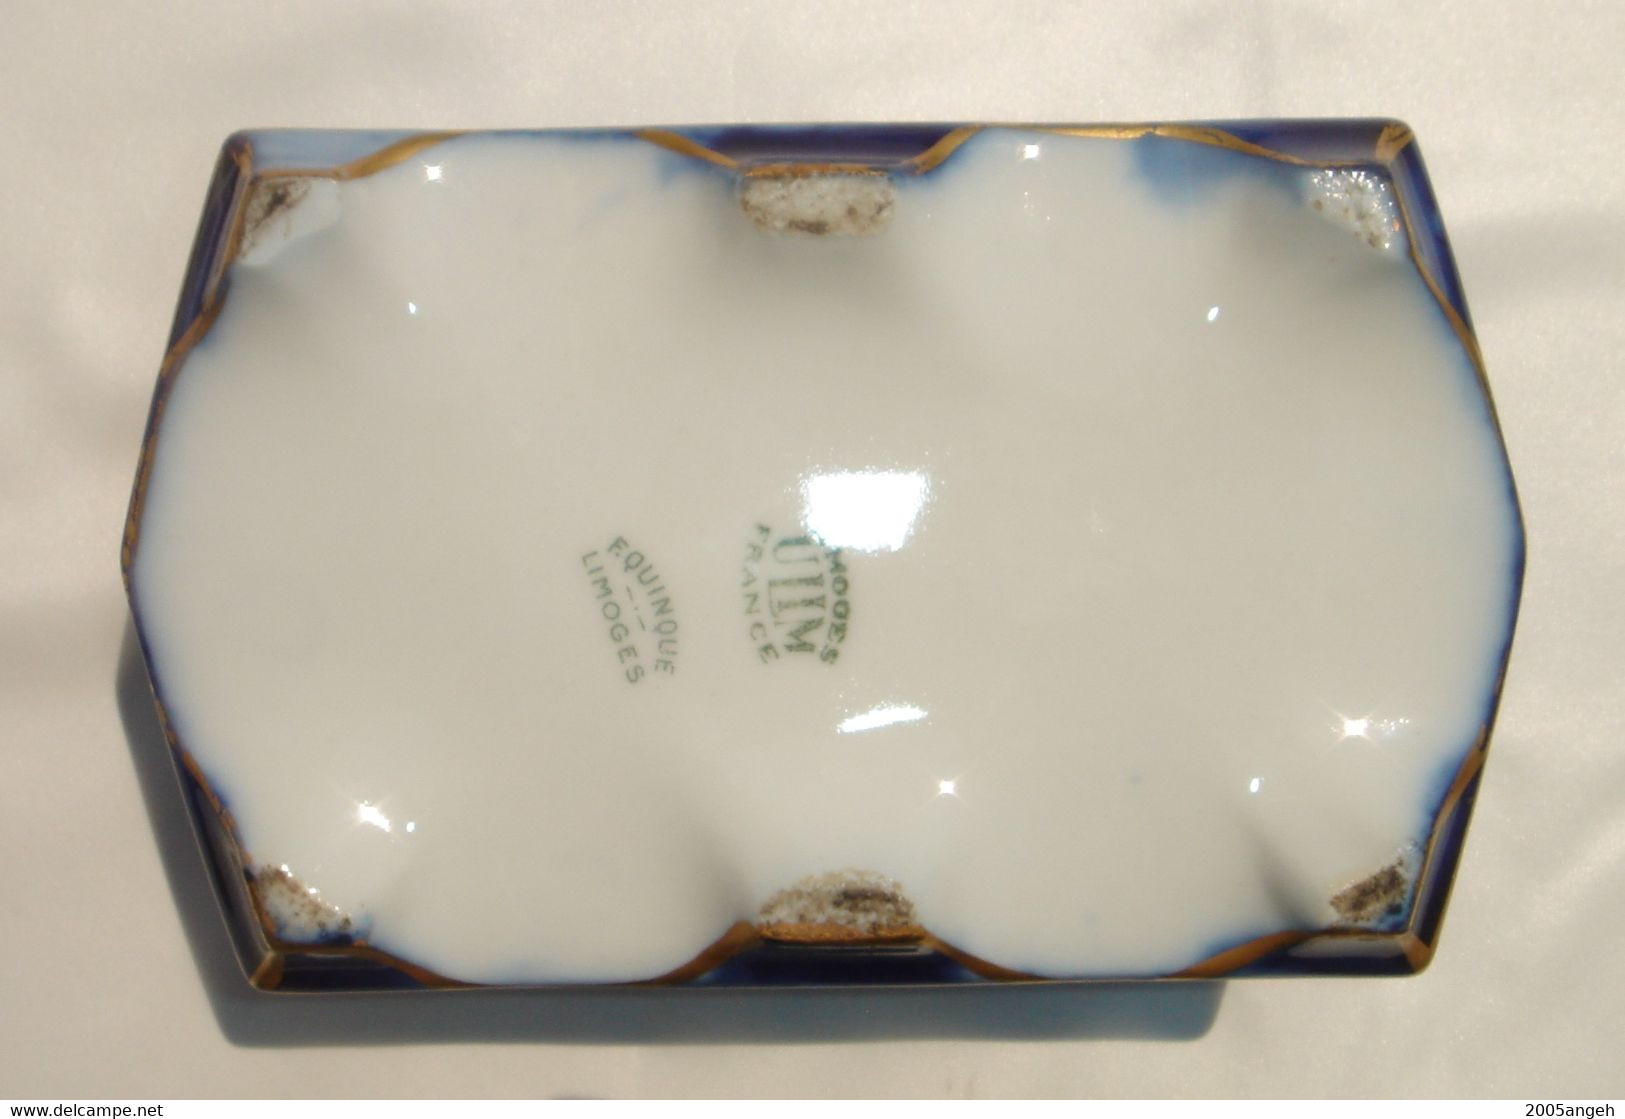 Boîte à bijoux en porcelaine de limoges - dorure en partie effacée sinon bon état. Longueur 14 cm - Hauteur 6,5 cm -